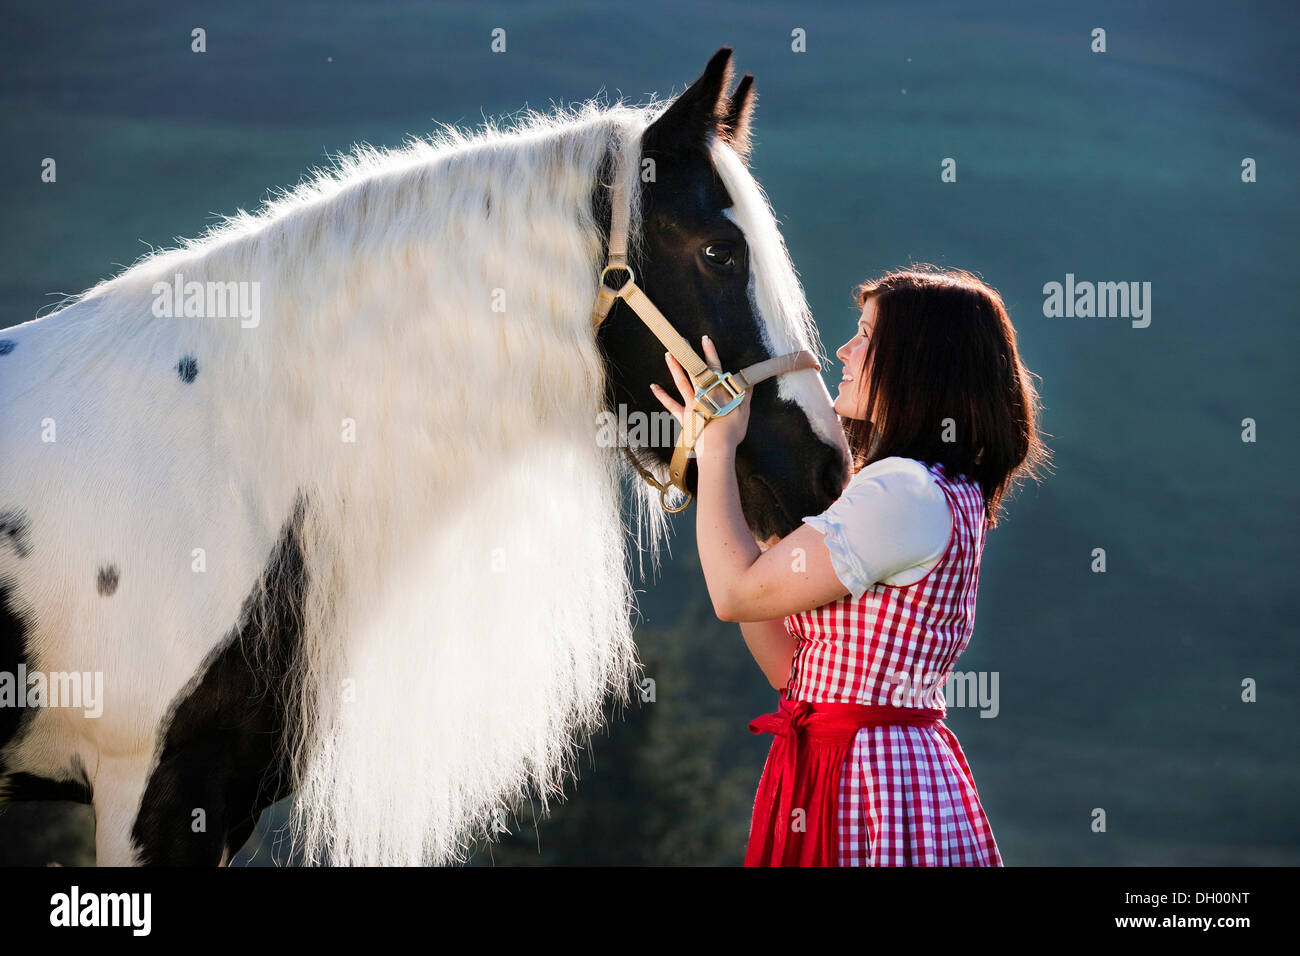 Jeune femme portant un dirndl de câlins avec un Gypsy Vanner ou cheval Tinker, Pinto, noir et blanc, Tyrol du Nord, l'Autriche, Europe Banque D'Images